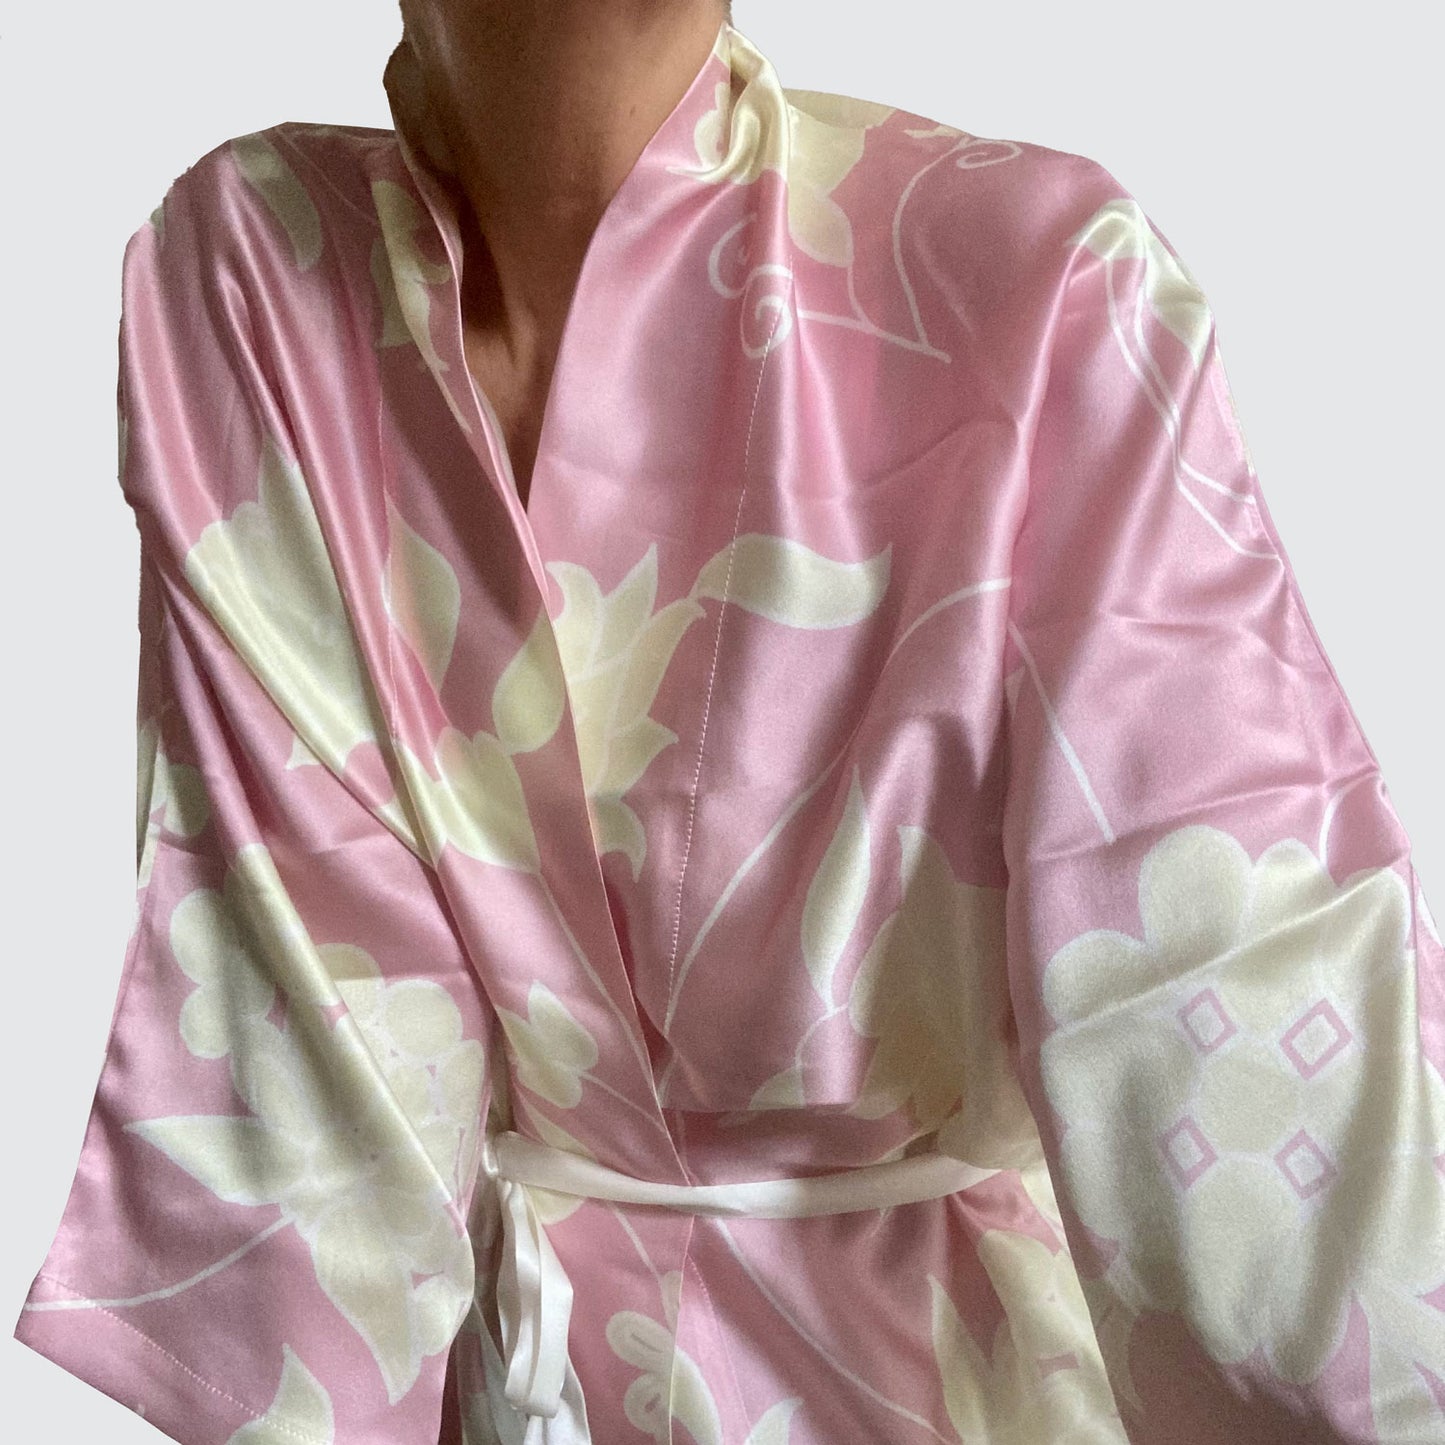 Kimono Silk Robe - Pink With Cream Floral Design